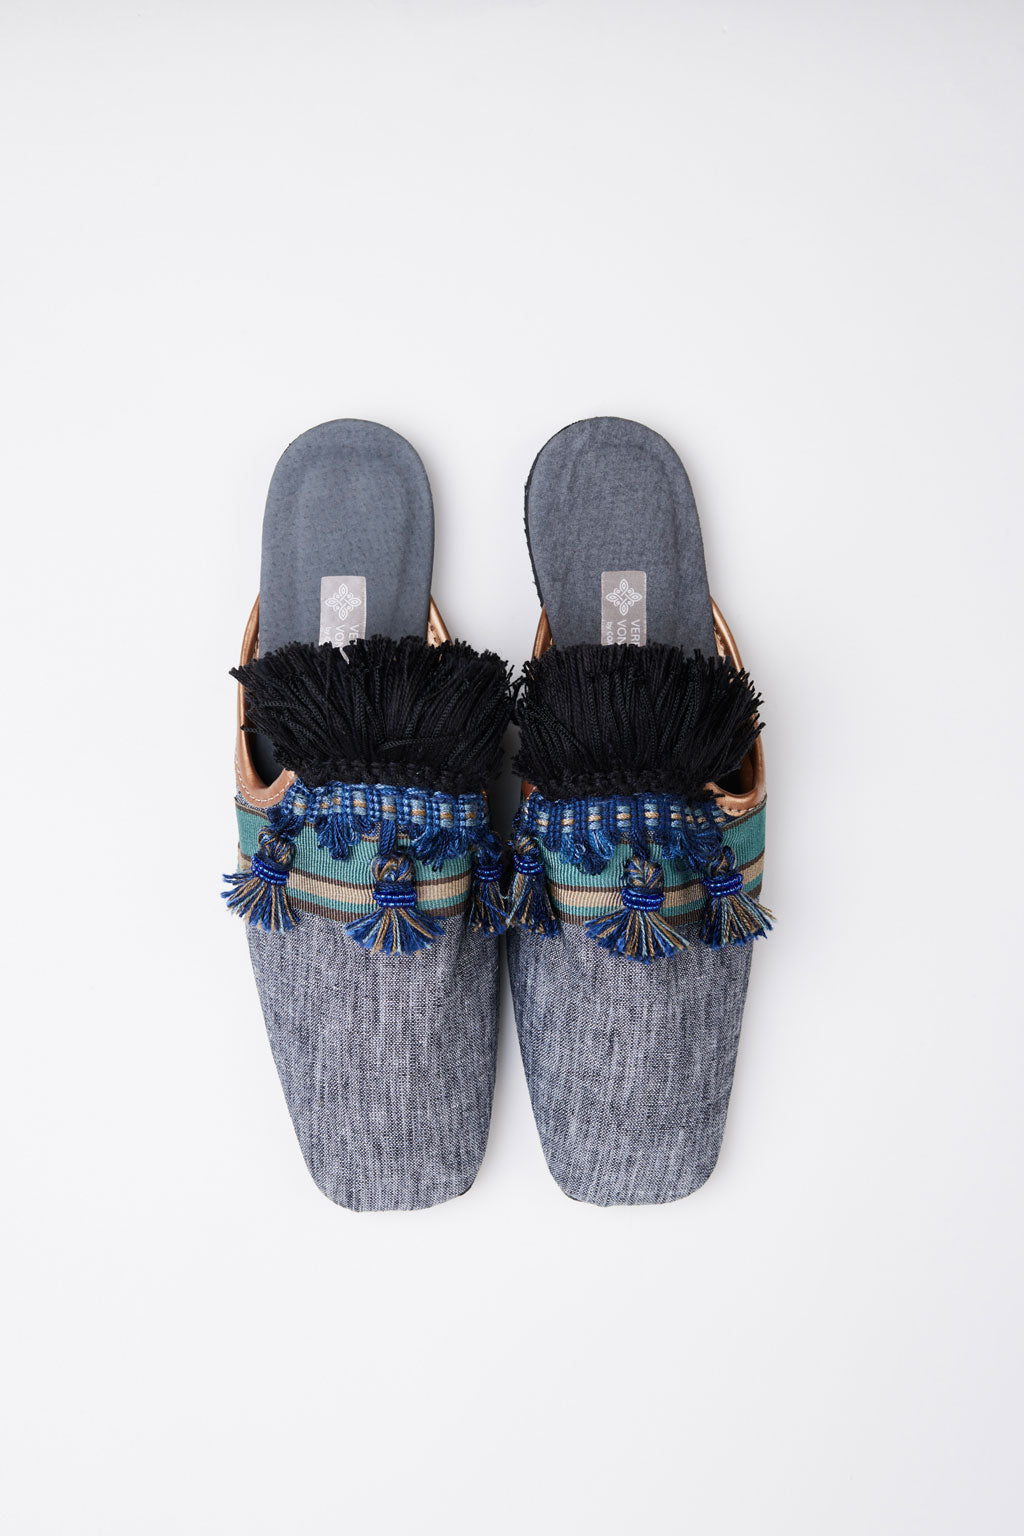 Slippers de luxe handmade Feyin Gr. 38